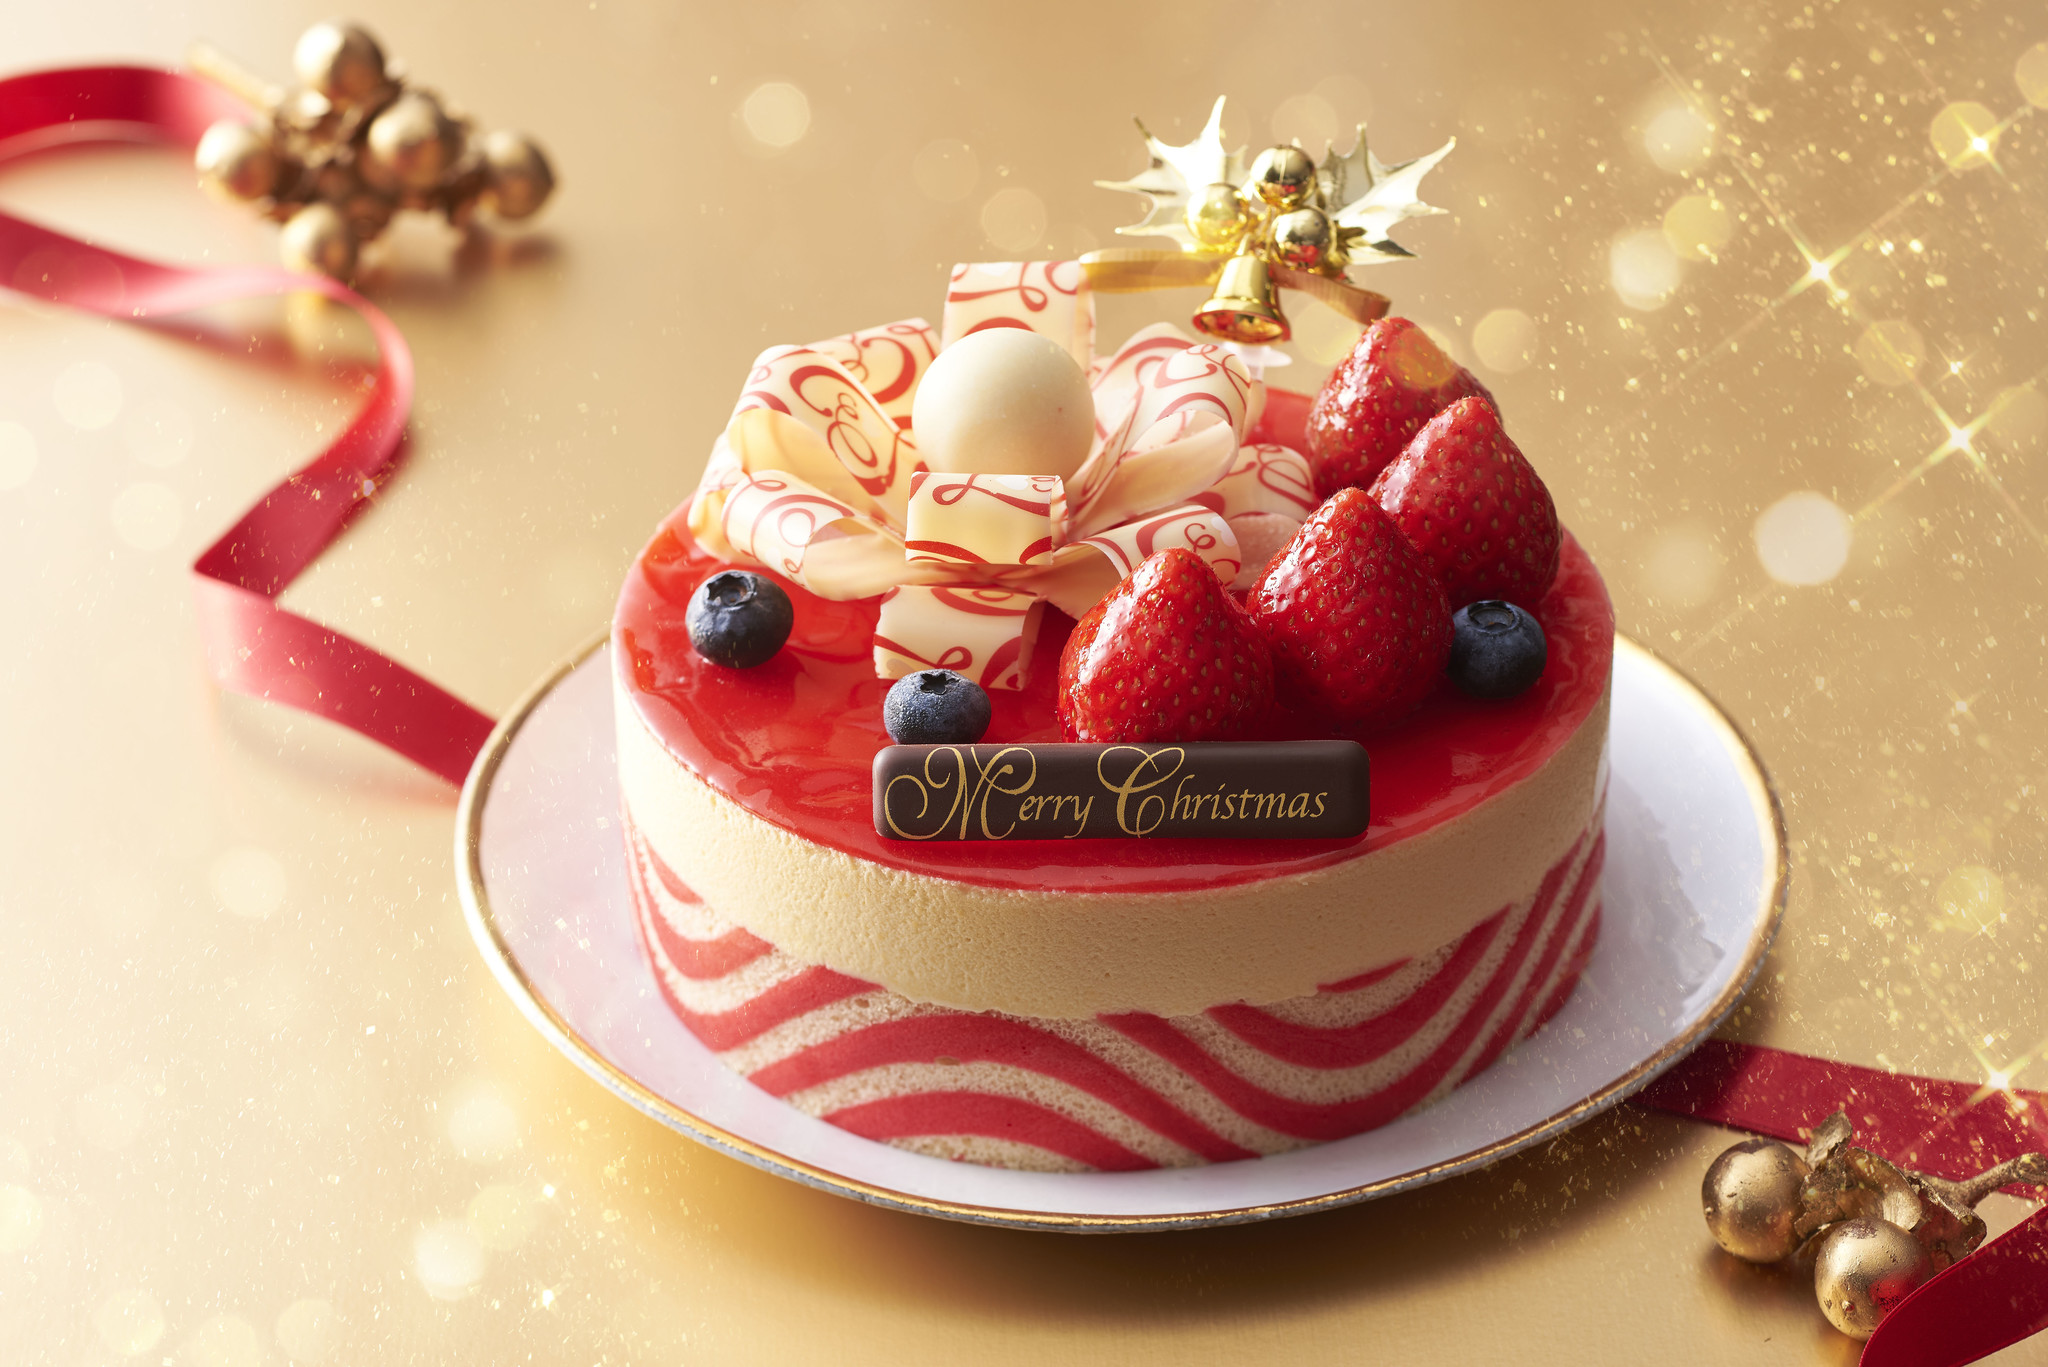 おうちパーティーを盛り上げる夢あふれるクリスマスケーキ アンテノール で早期予約キャンペーンを実施します 株式会社 エーデルワイスのプレスリリース